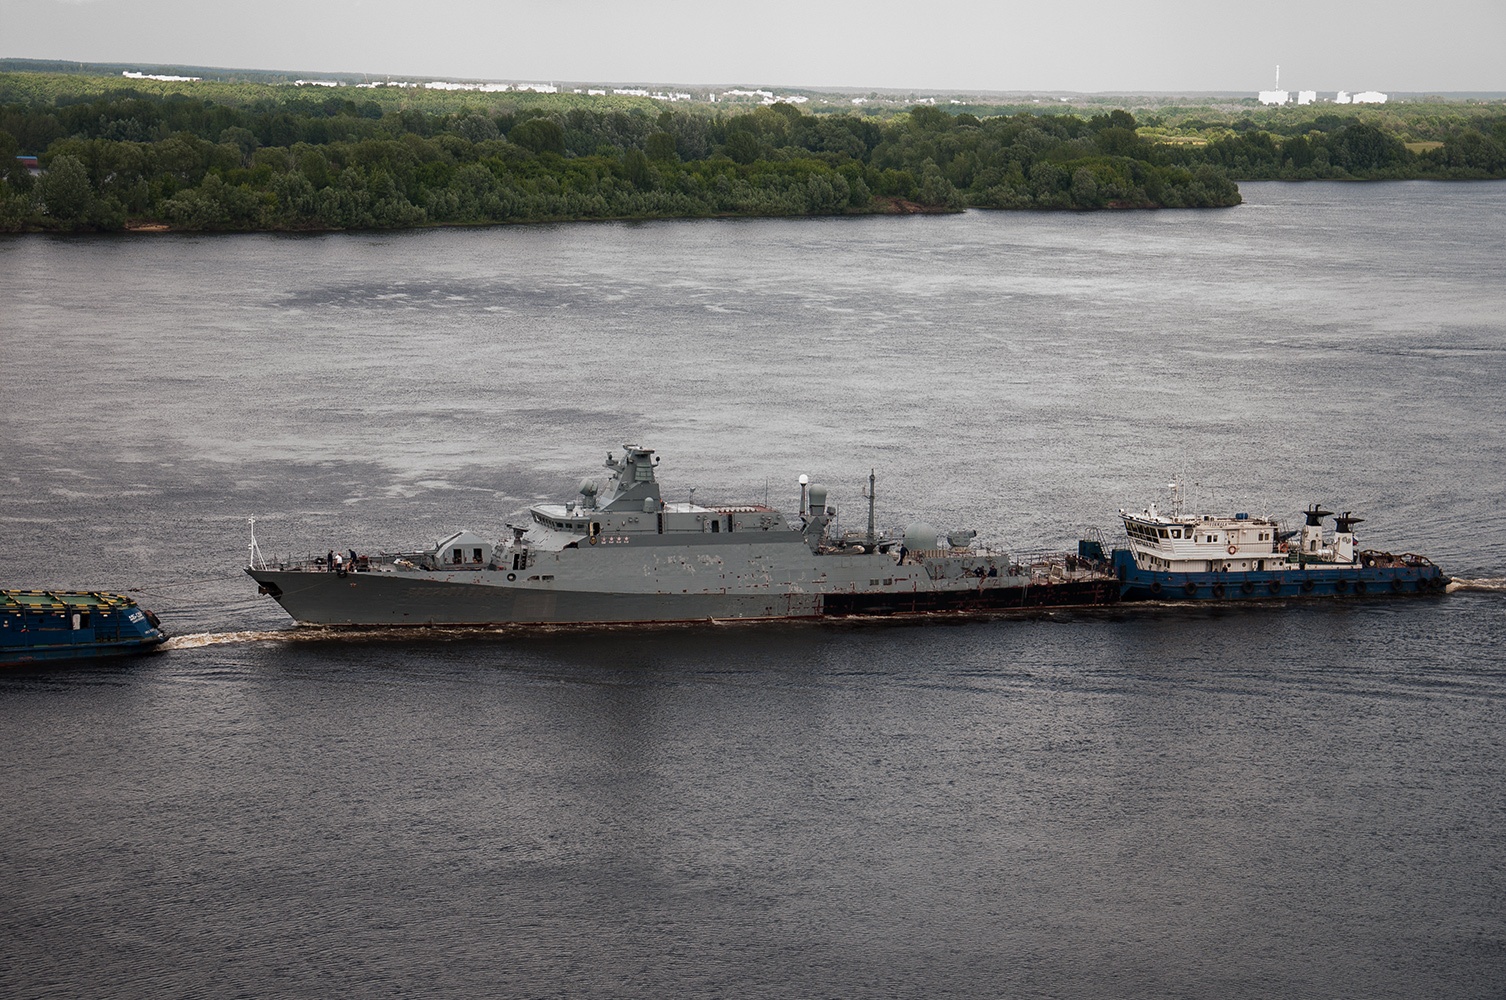 Le forze armate ucraine hanno abbattuto la nave militare russa che trasportava missili Kalibr: è già stata rimorchiata in Russia